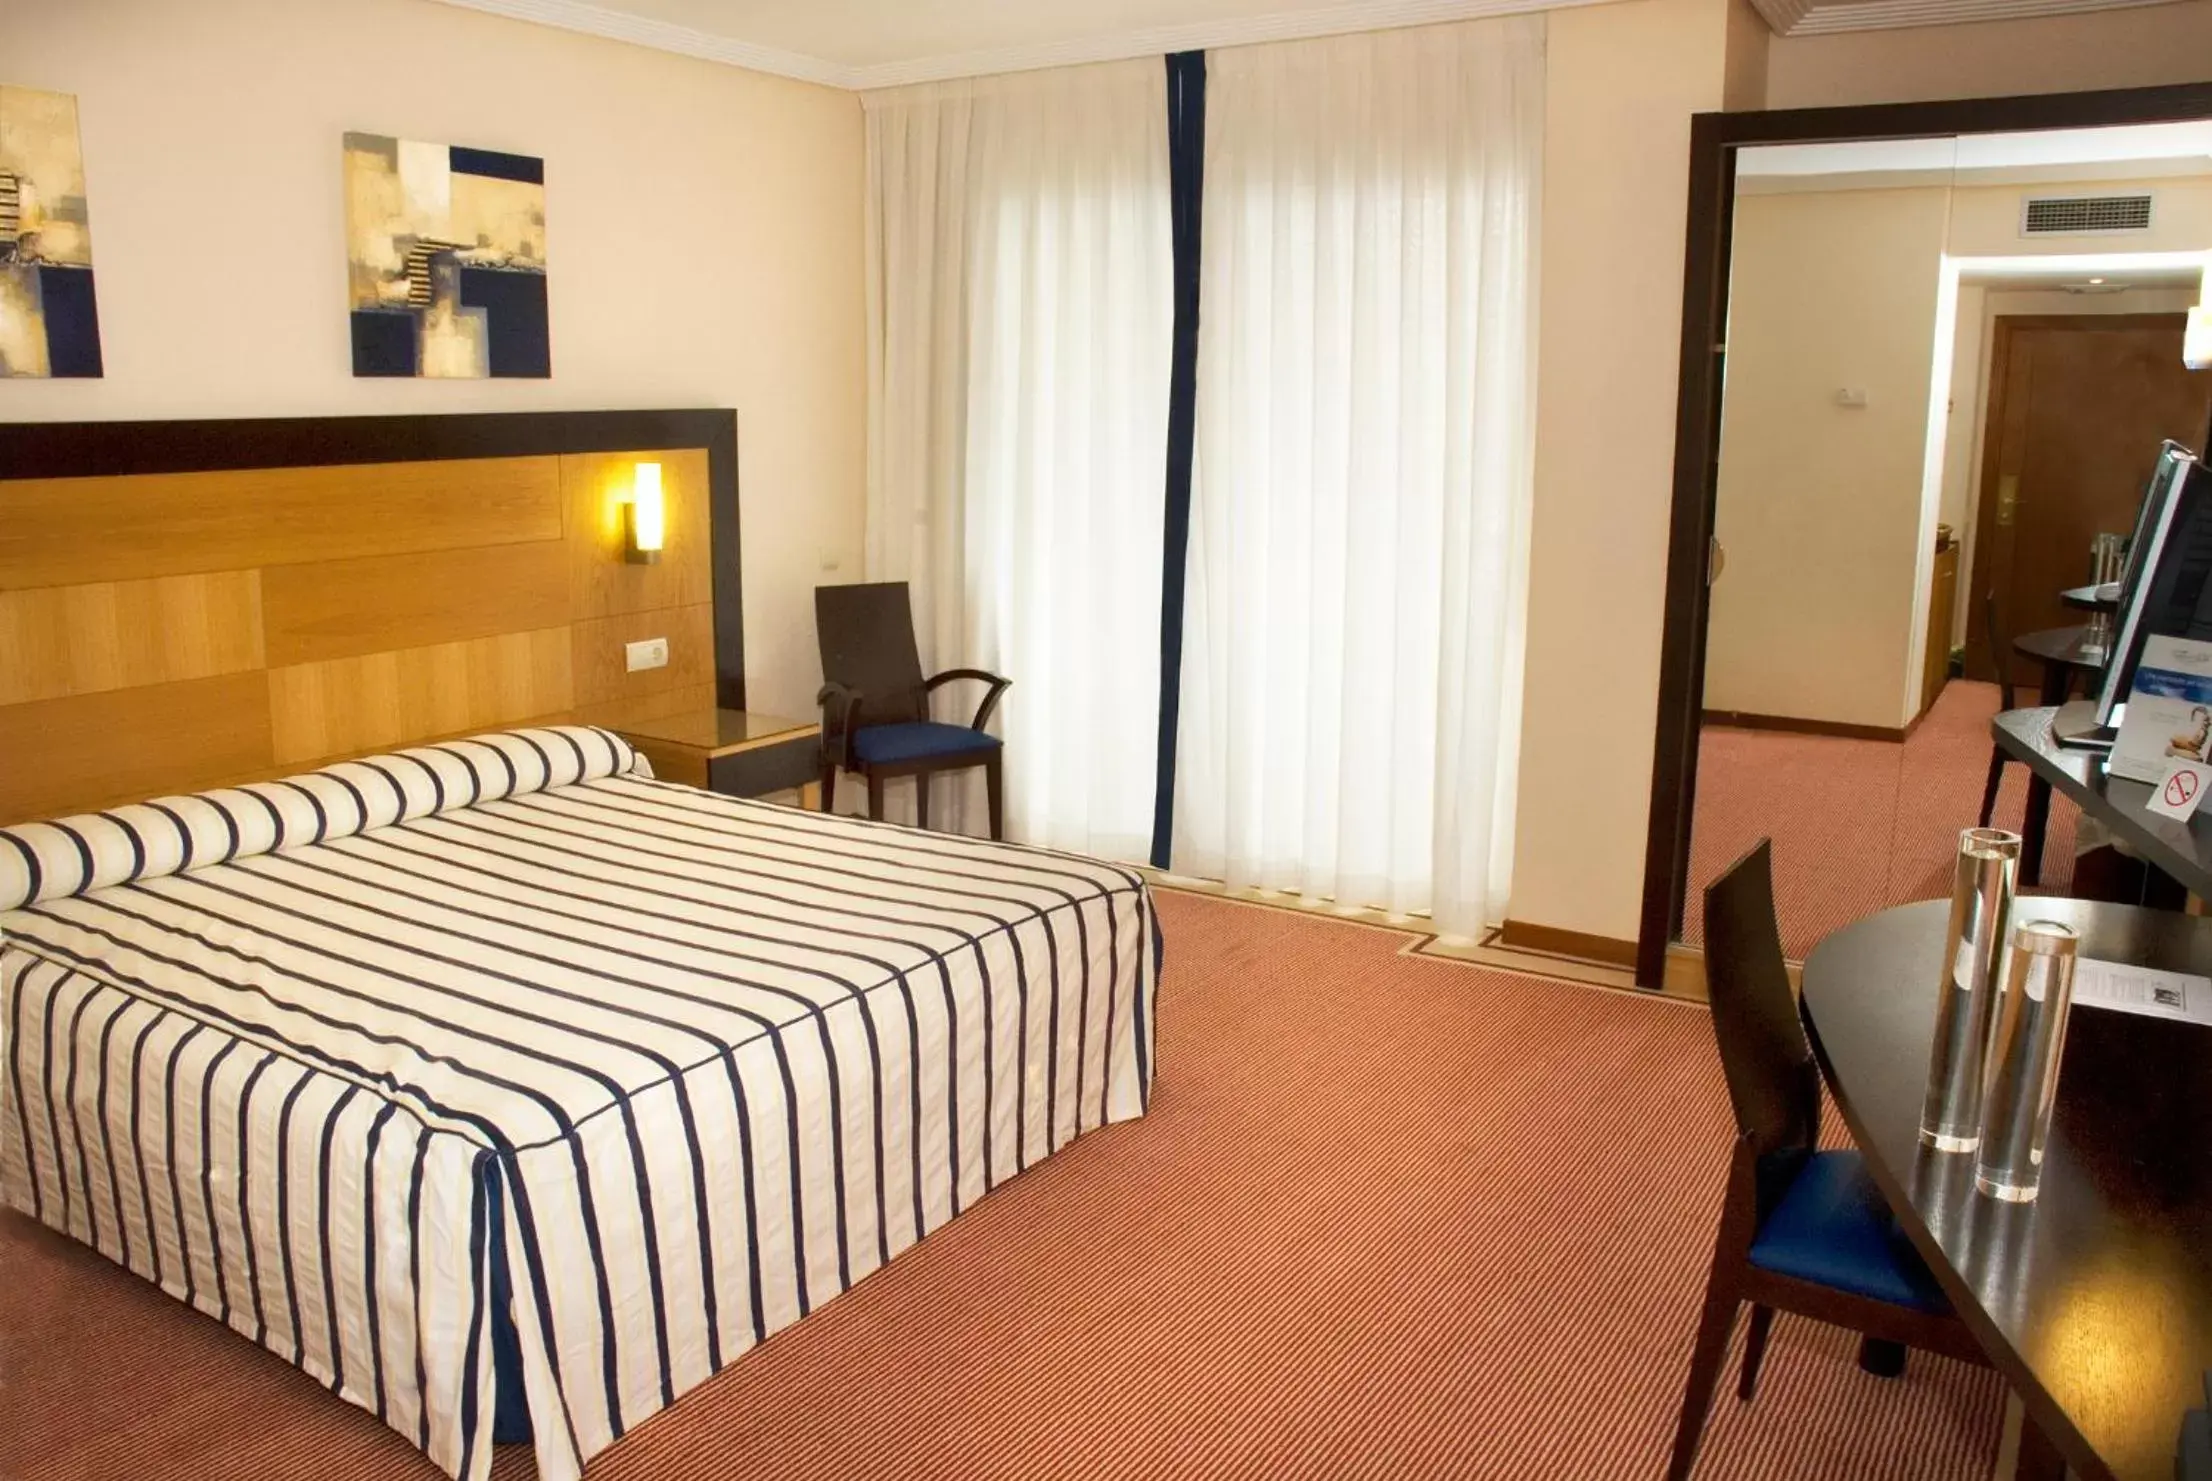 Triple Room (2 Adults + 1 Child) in Hotel Bonalba Alicante